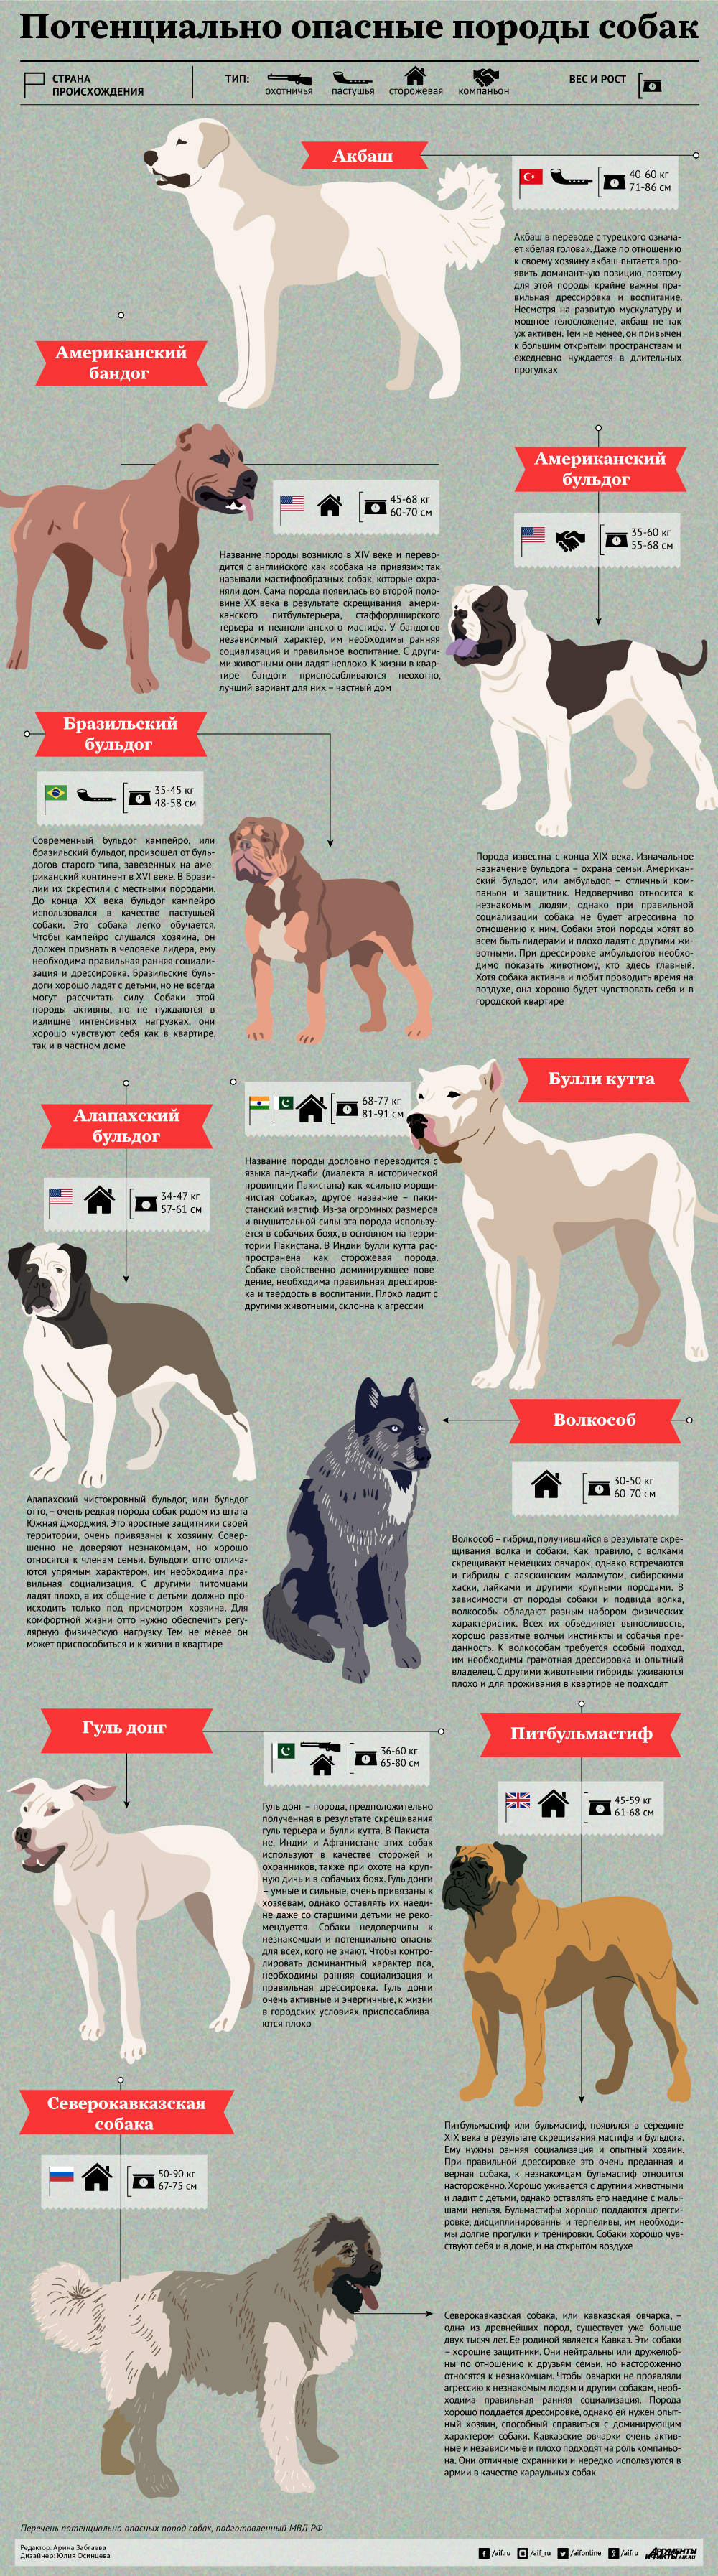 Потенциально опасные собаки рф. Породы опасных собак 2021. Опасные породы собак список в РФ 2021. Потенциально опасные породы. Потенциальлноопасные собаки.